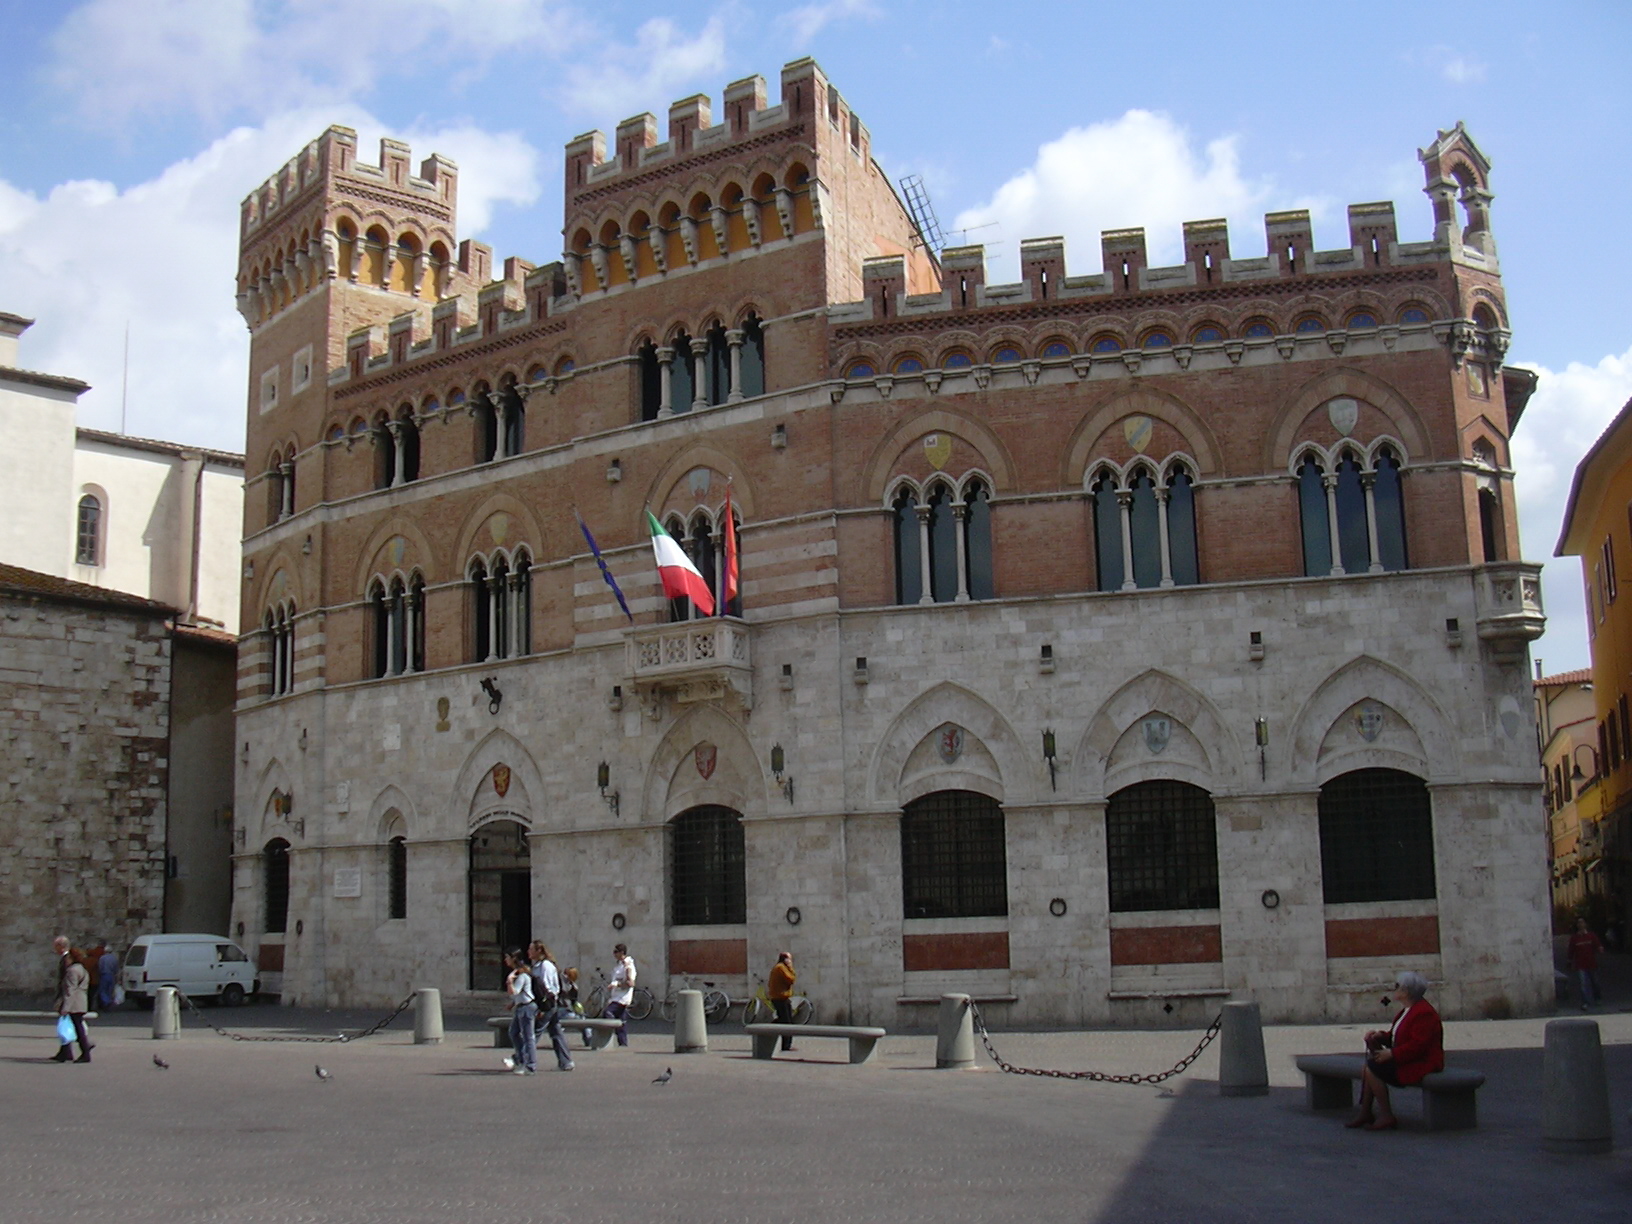 Grosseto square and Palazzo Aldobrandeschi. 